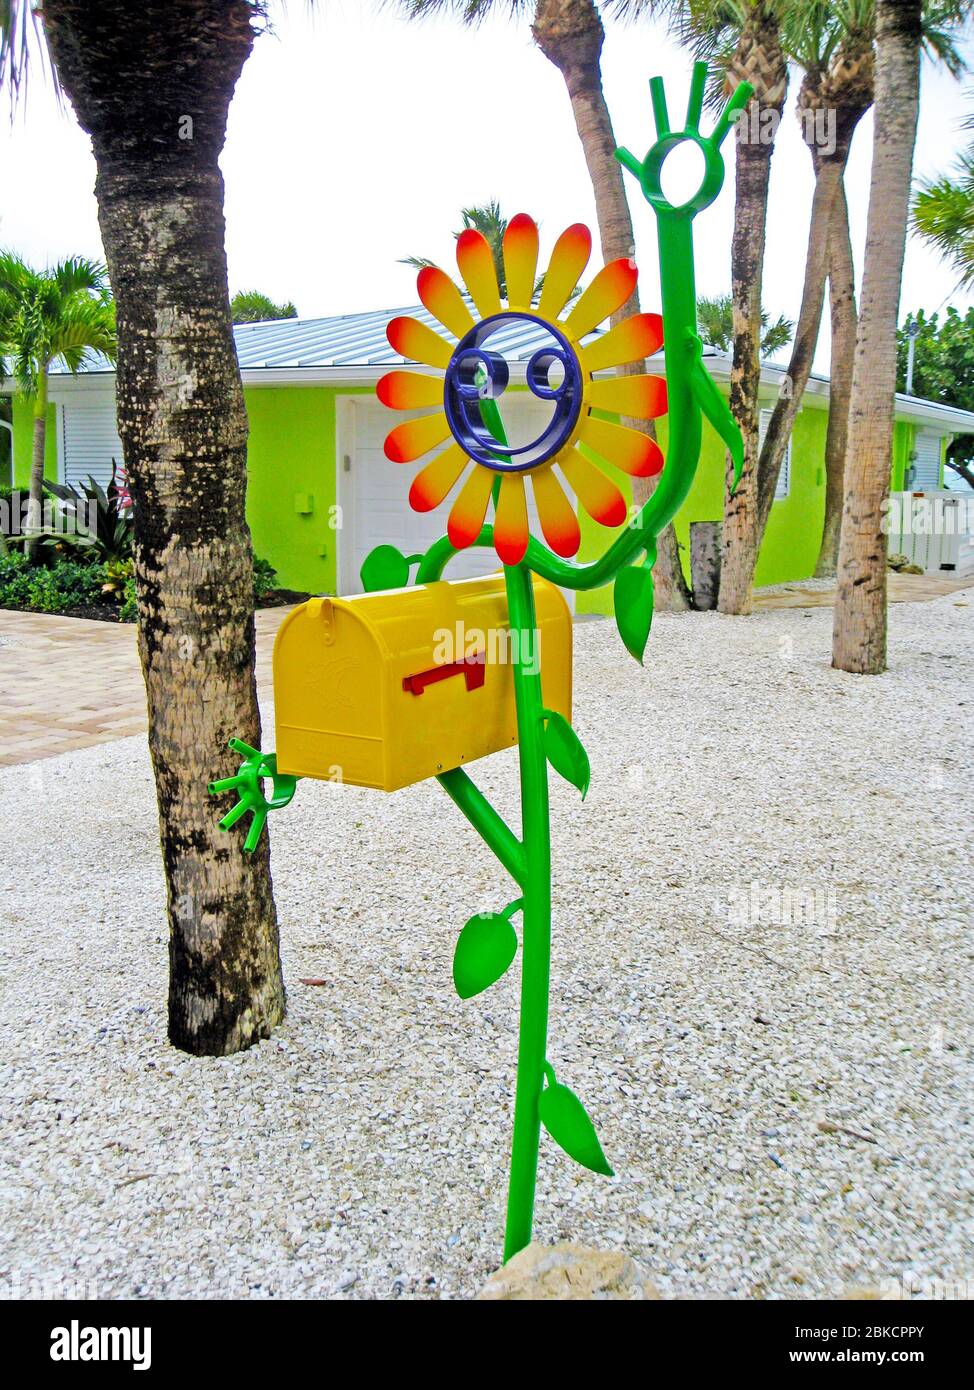 Una casella postale degli Stati Uniti che è tenuta da un fiore smiley-faccia artisticamente fatto di metallo dipinto brillantemente cattura l'occhio della gente che passa da questa casa colorata su Casey Key nella contea di Sarasota lungo la costa del Golfo della Florida, Stati Uniti. È il lavoro creativo di Floridian Scott Gerber, che ha realizzato la sua prima figura sorridente del bastone da tubi di alluminio di scarto nel 2010. Da allora la sua azienda Tube Dude ha venduto migliaia di sculture stravaganti realizzate su misura in vari disegni a clienti di tutto il mondo. Foto Stock